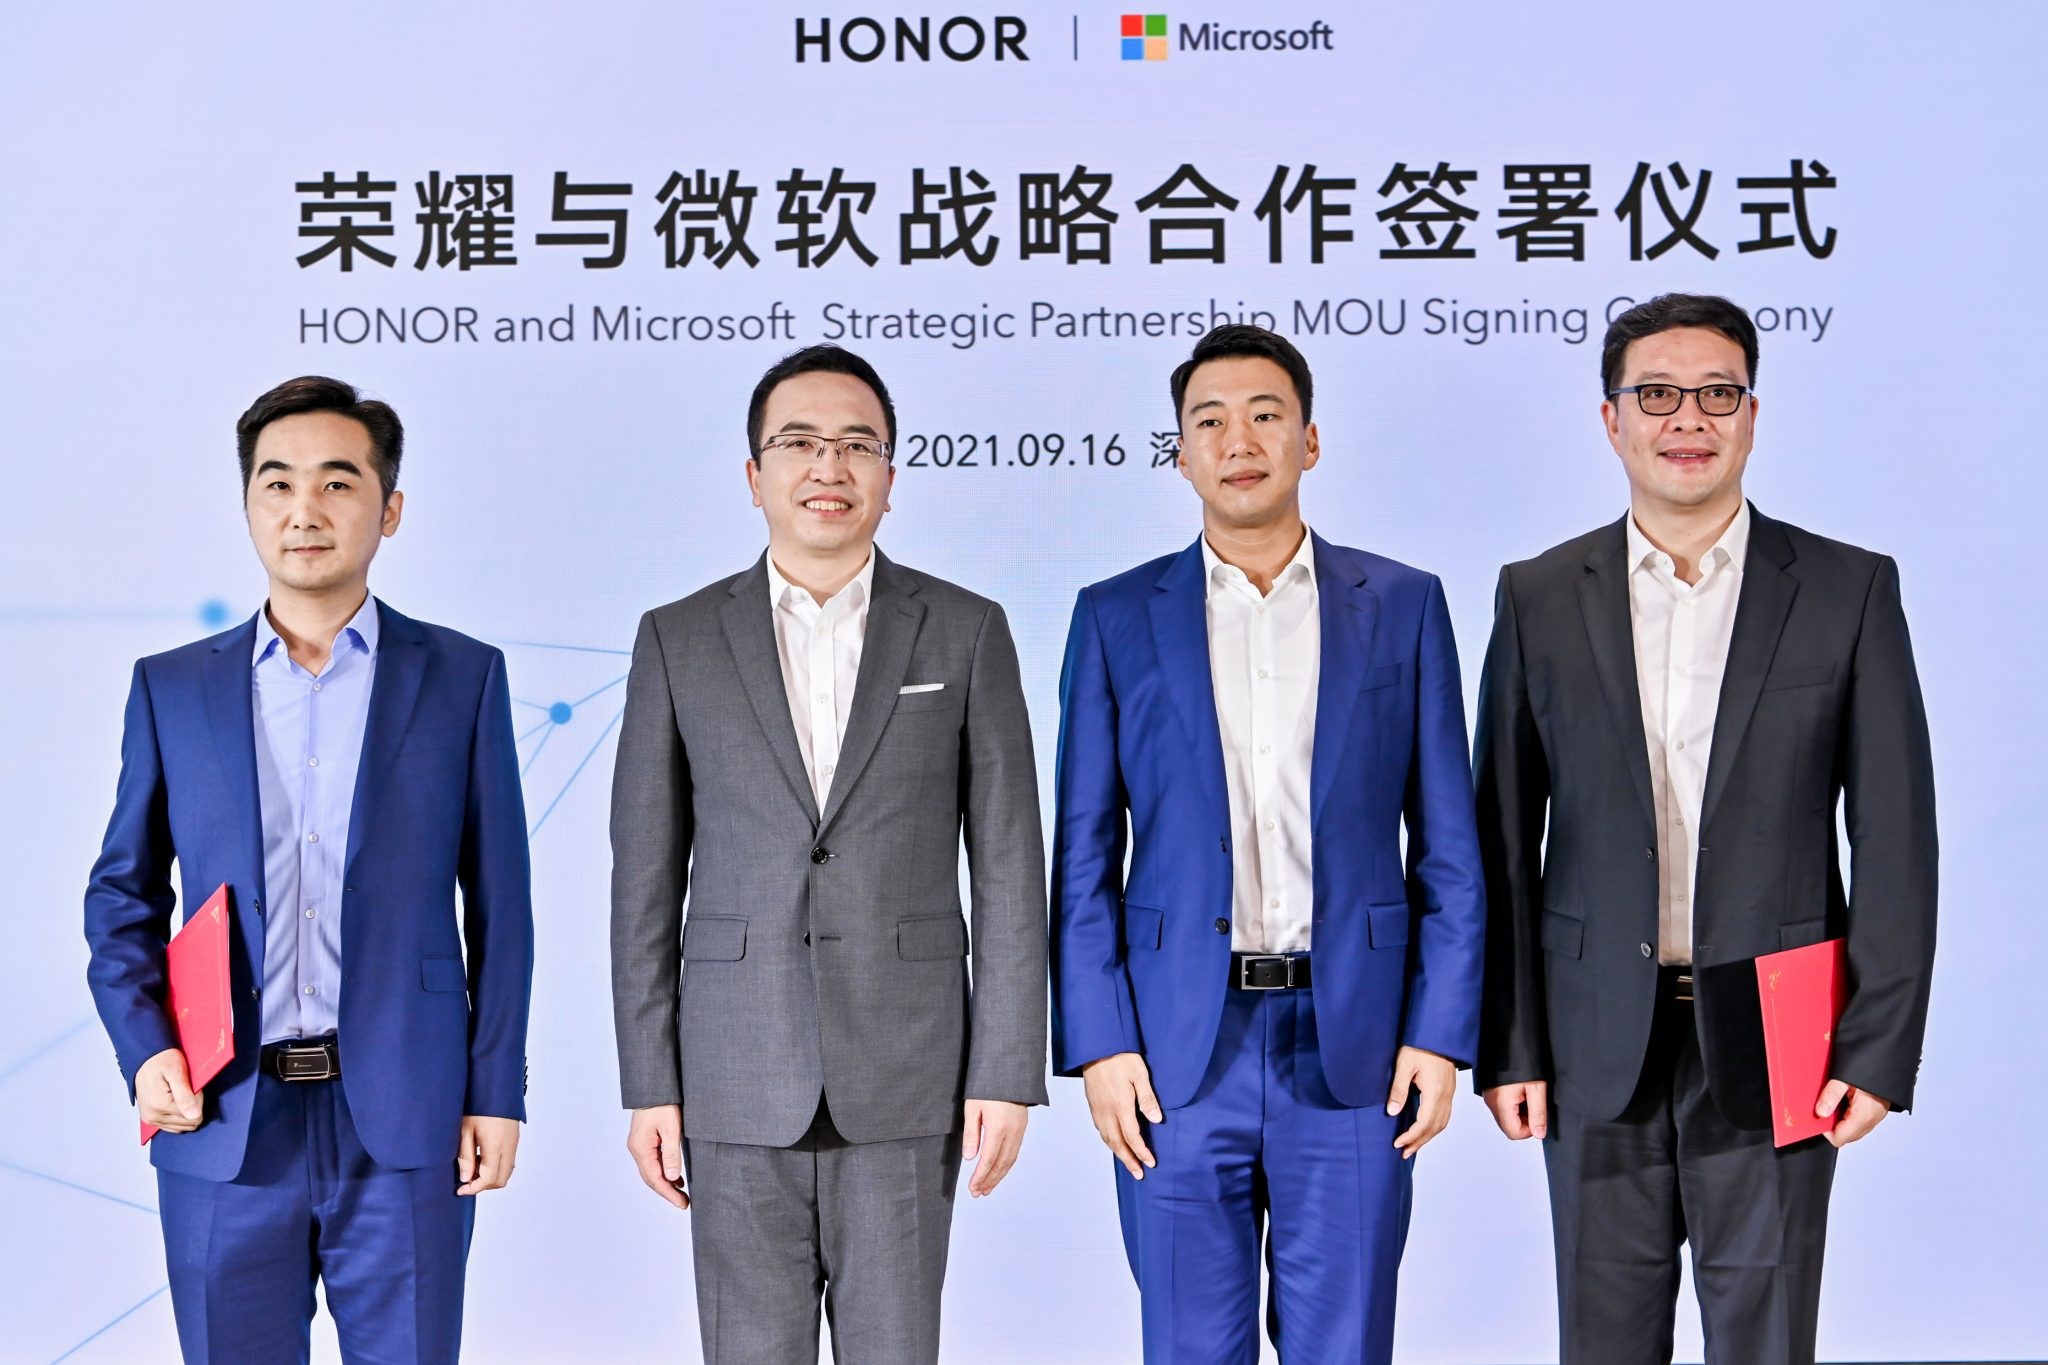 Honor, Microsoft ile stratejik ortaklık anlaşması imzaladı